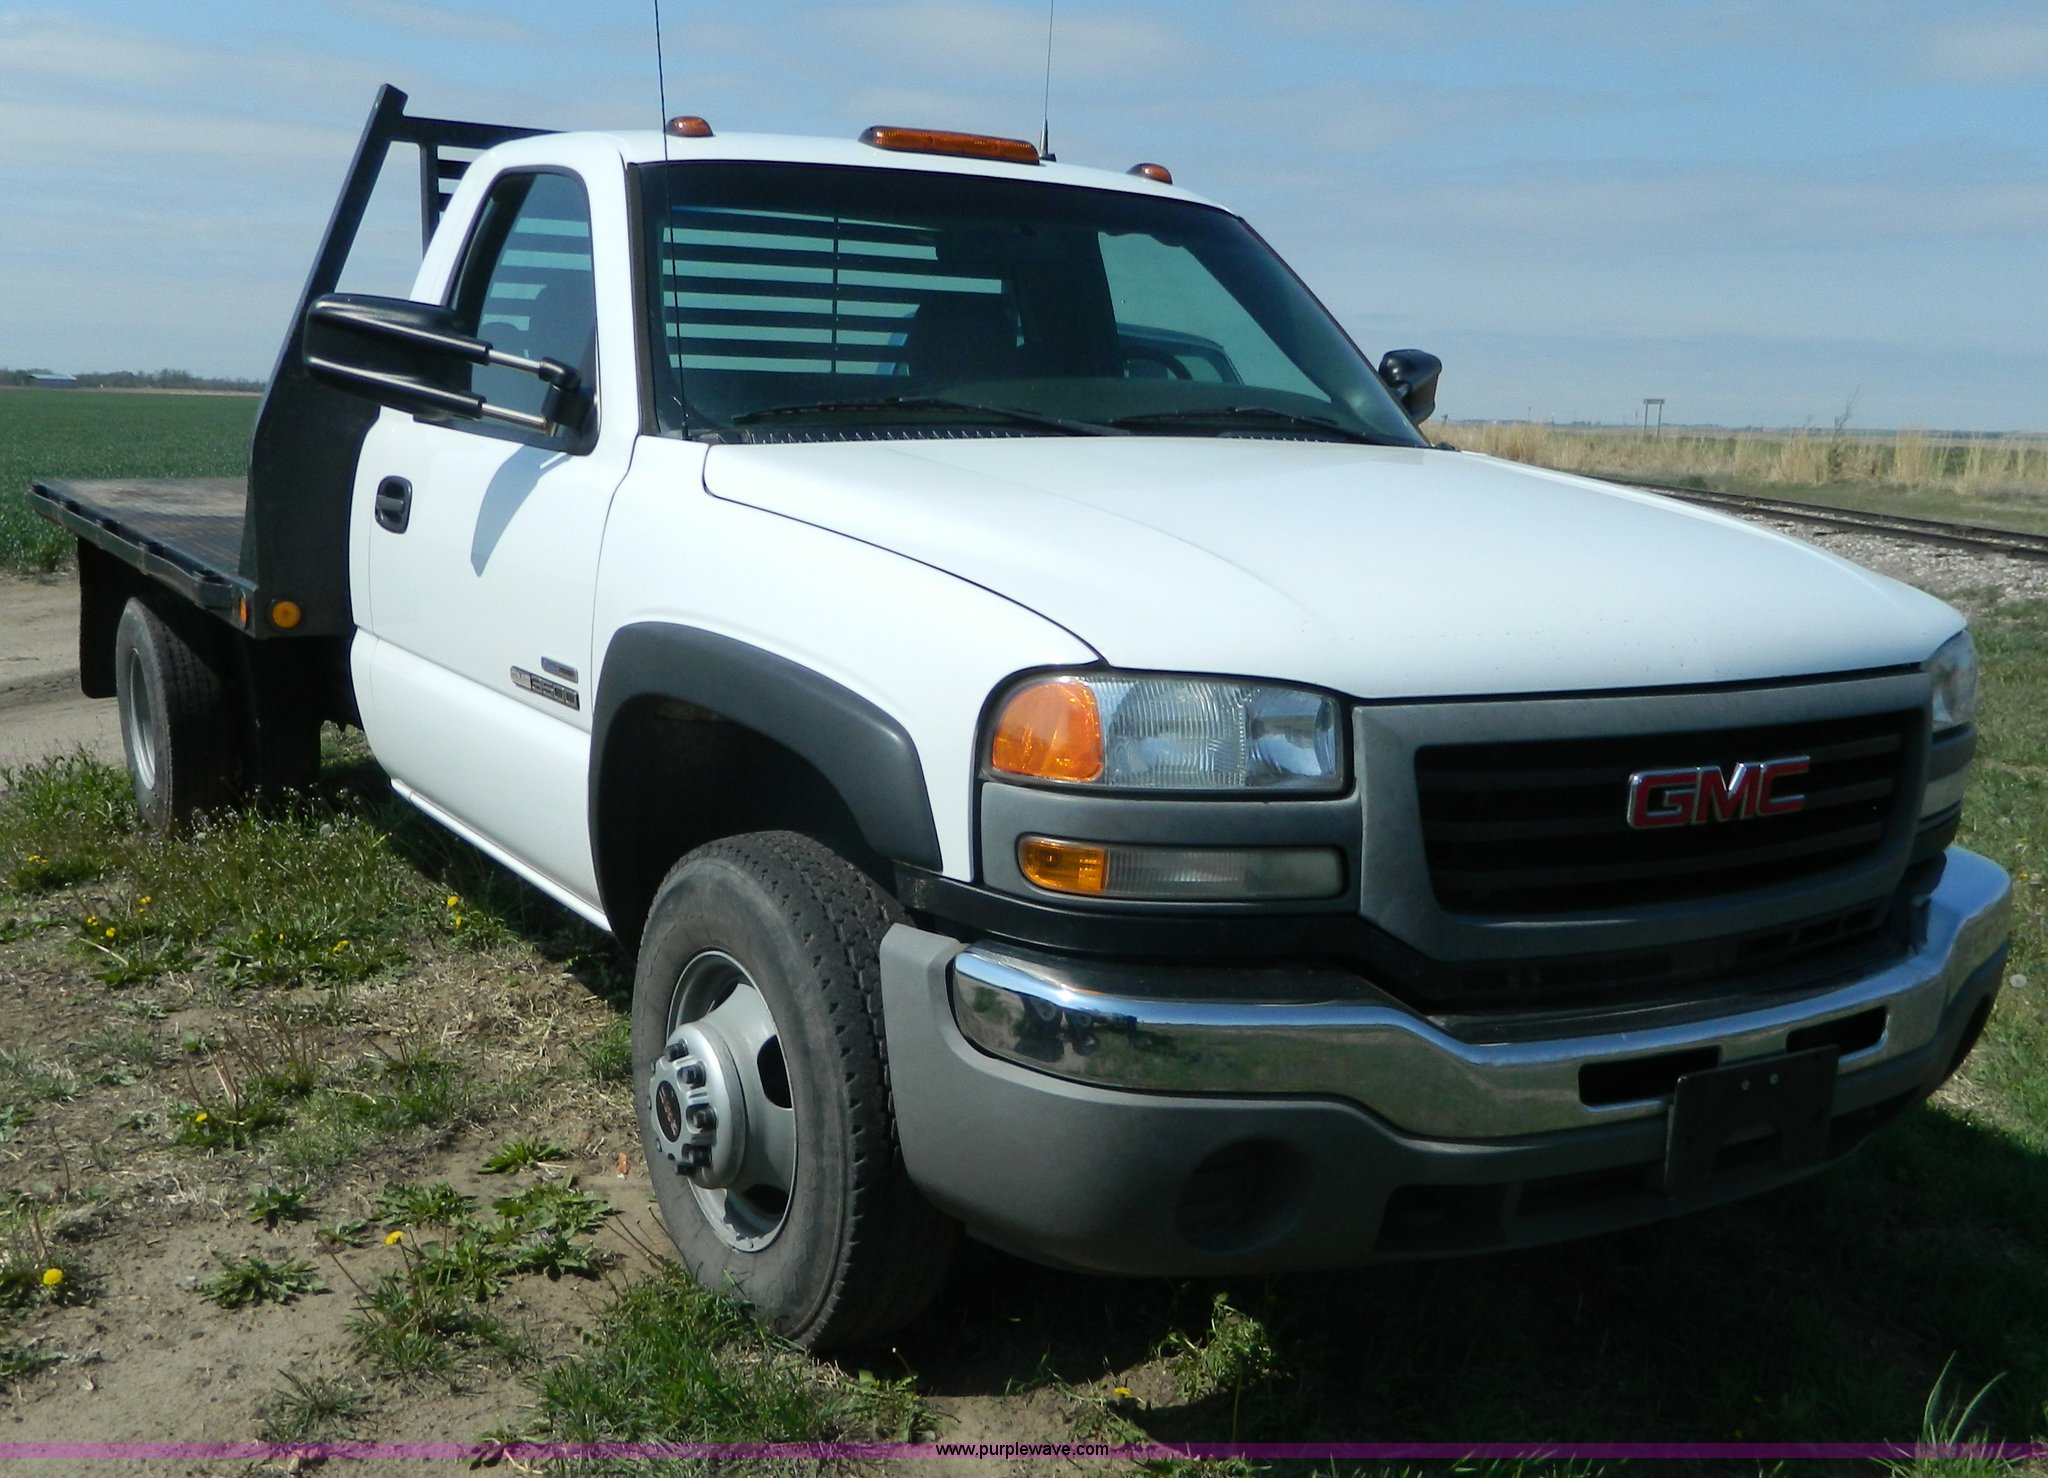 2006 GMC Sierra 3500 flatbed pickup truck in Great Bend, KS | Item K8066  sold | Purple Wave